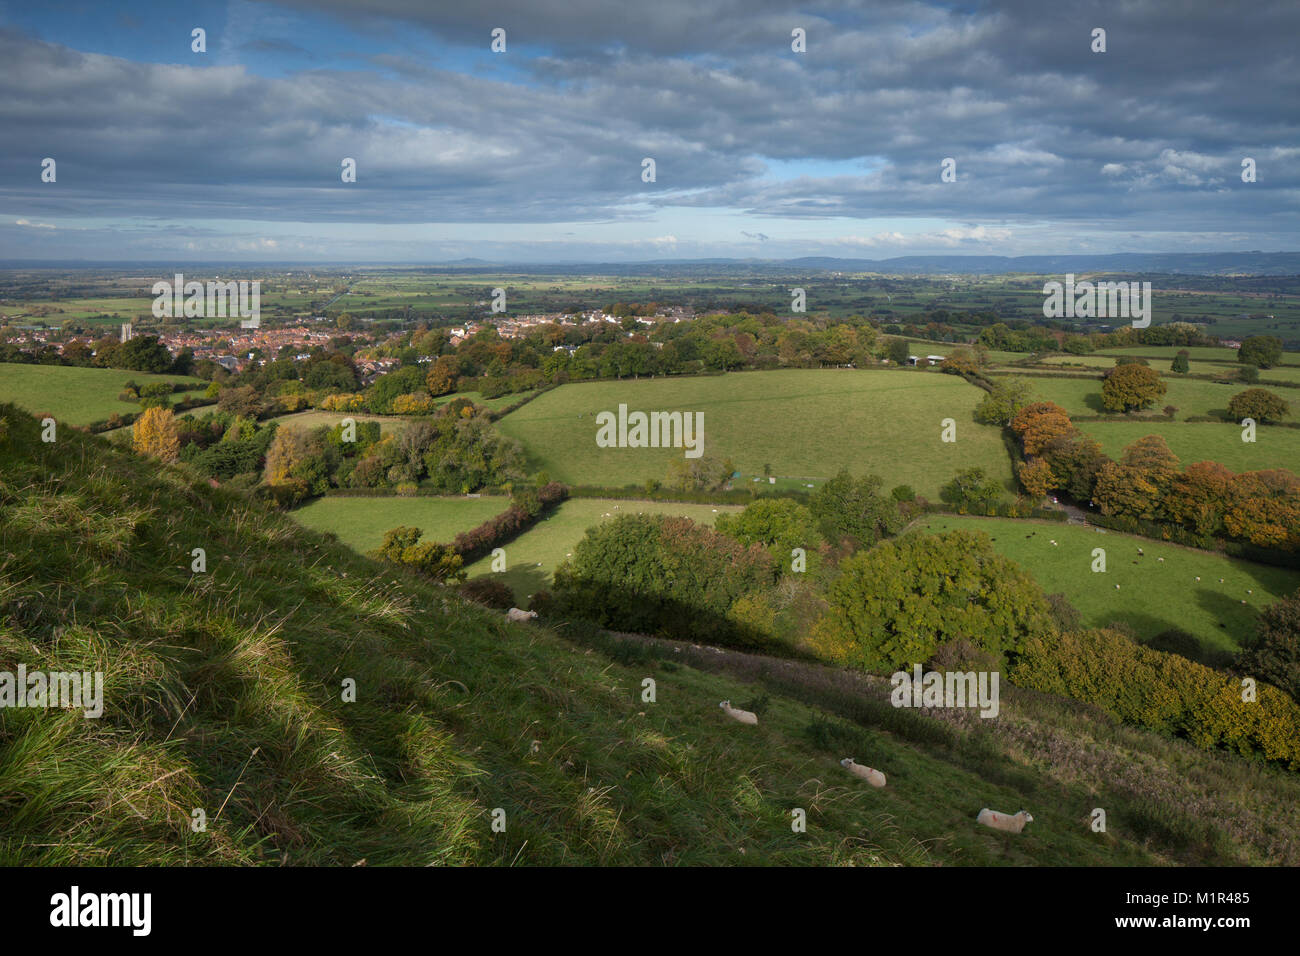 La ciudad de Glastonbury visto desde las escarpadas laderas de hierba de Glastonbury Tor con los niveles de Somerset y Mendip Hills en la distancia, Somerset, Reino Unido. Foto de stock